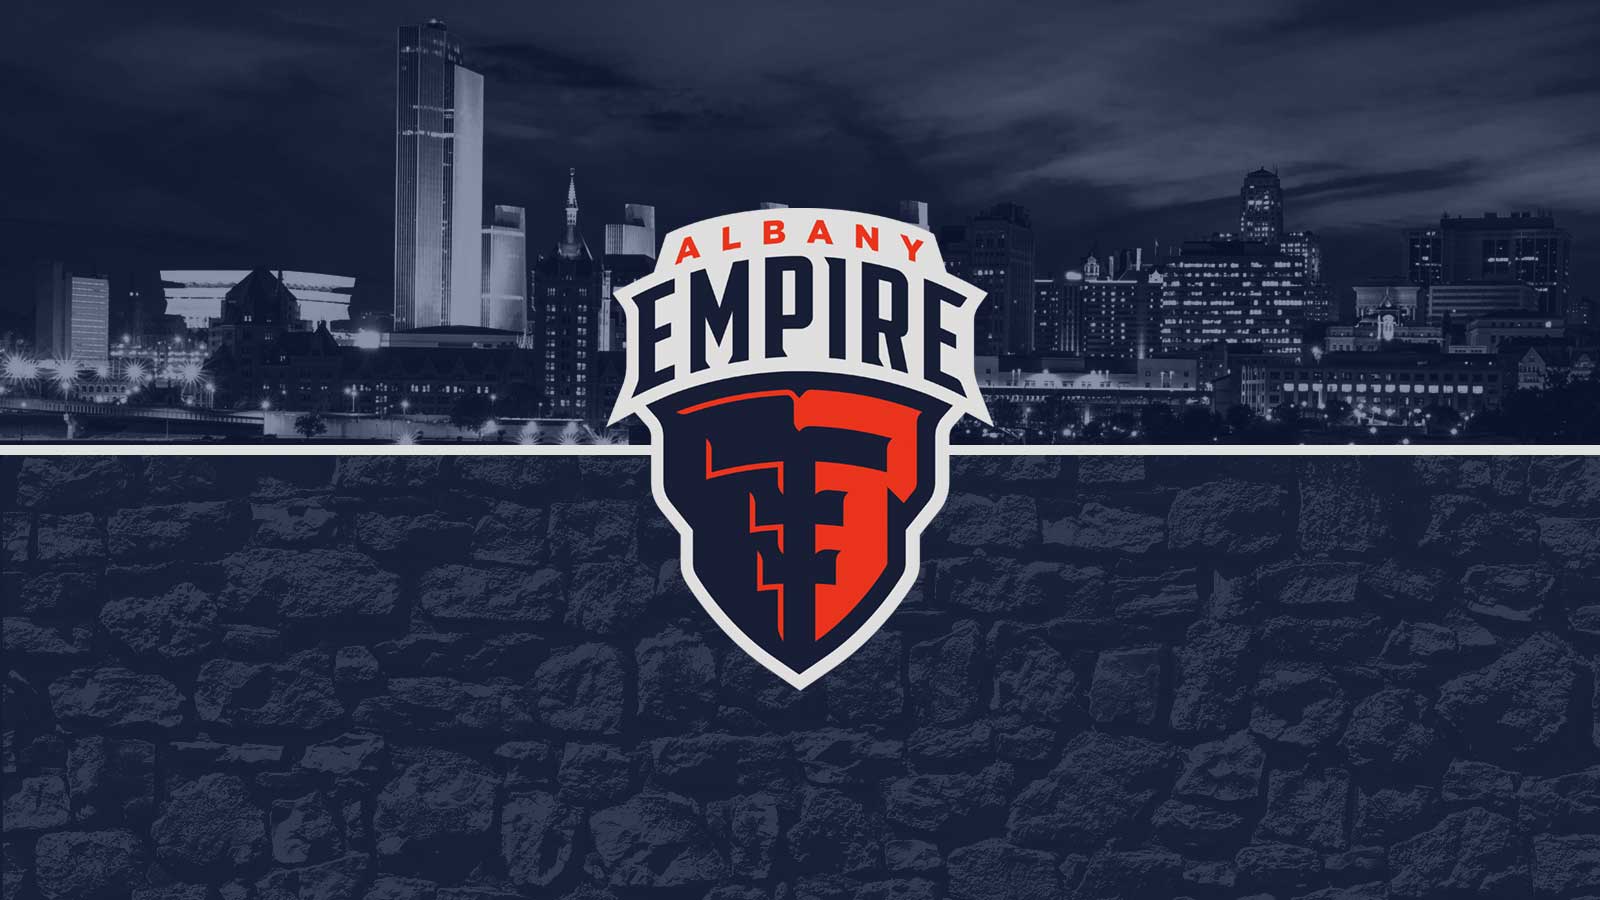 Empire Logo - TheAlbanyEmpire.com - Albany Empire Announced as AFL Team Name and Logo